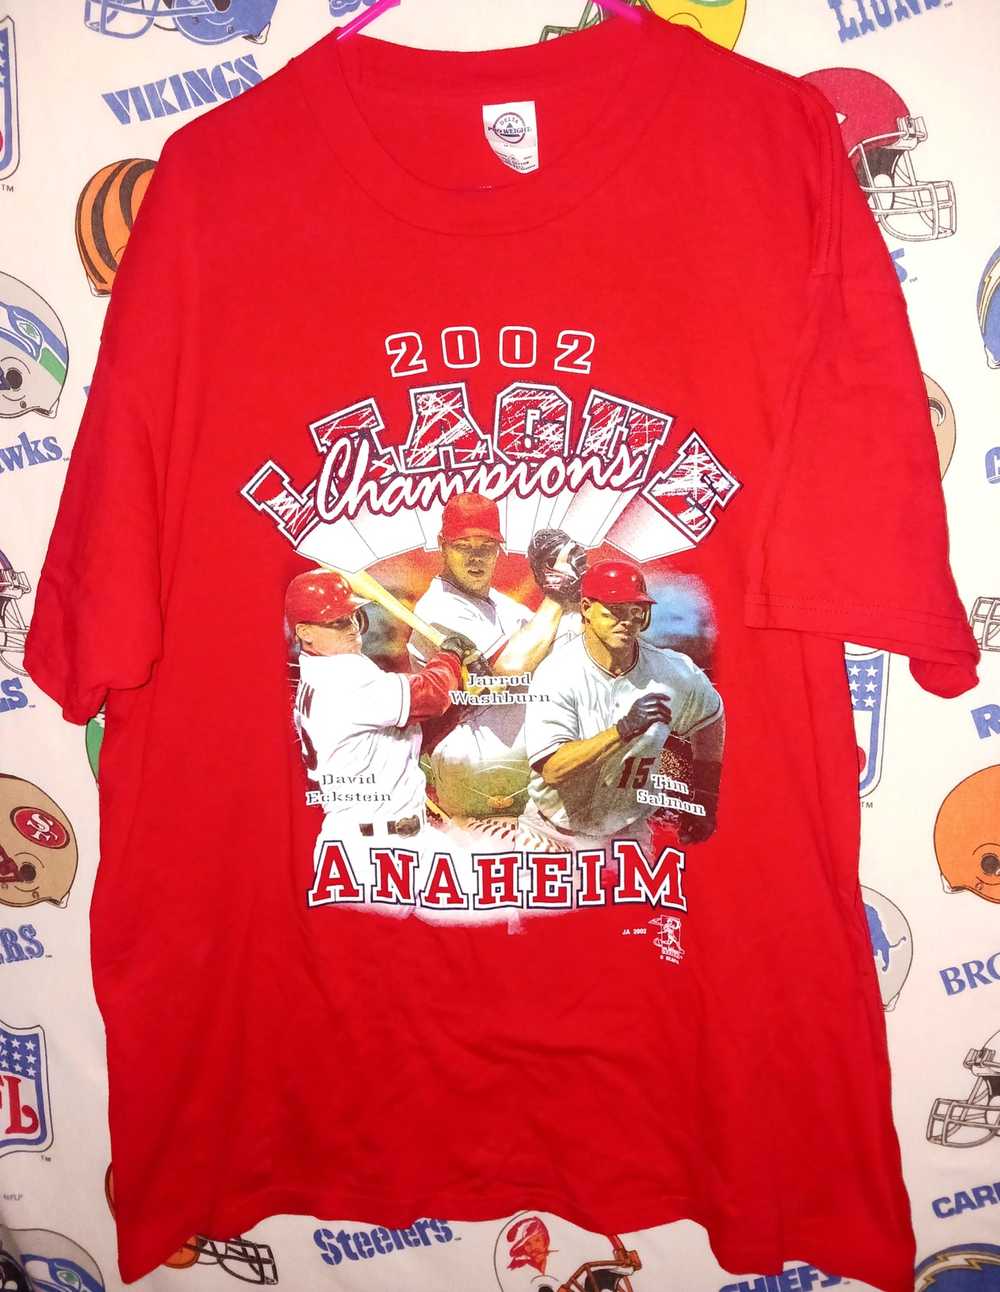  Nike Men's MLB Cooperstown Rewind T-Shirt (as1, Alpha, m,  Regular, Regular, St. Louis Cards - Red) : Sports & Outdoors